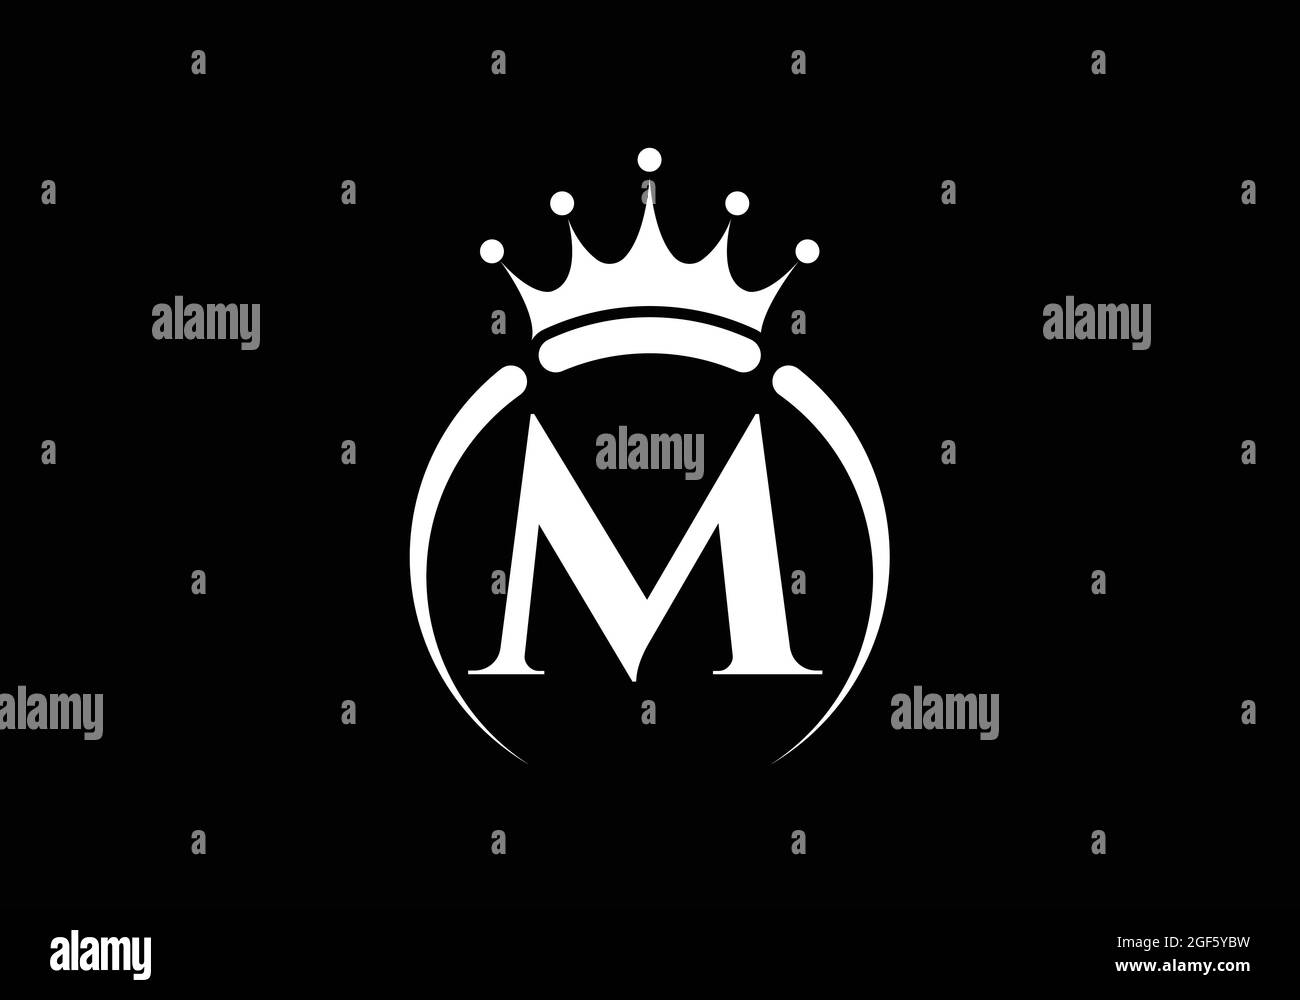 Initiale M monogramme alphabet avec une couronne. Symbole Royal, King, Queen de luxe. Emblème de police. Affiche de luxe moderne. Illustration vectorielle. Illustration de Vecteur